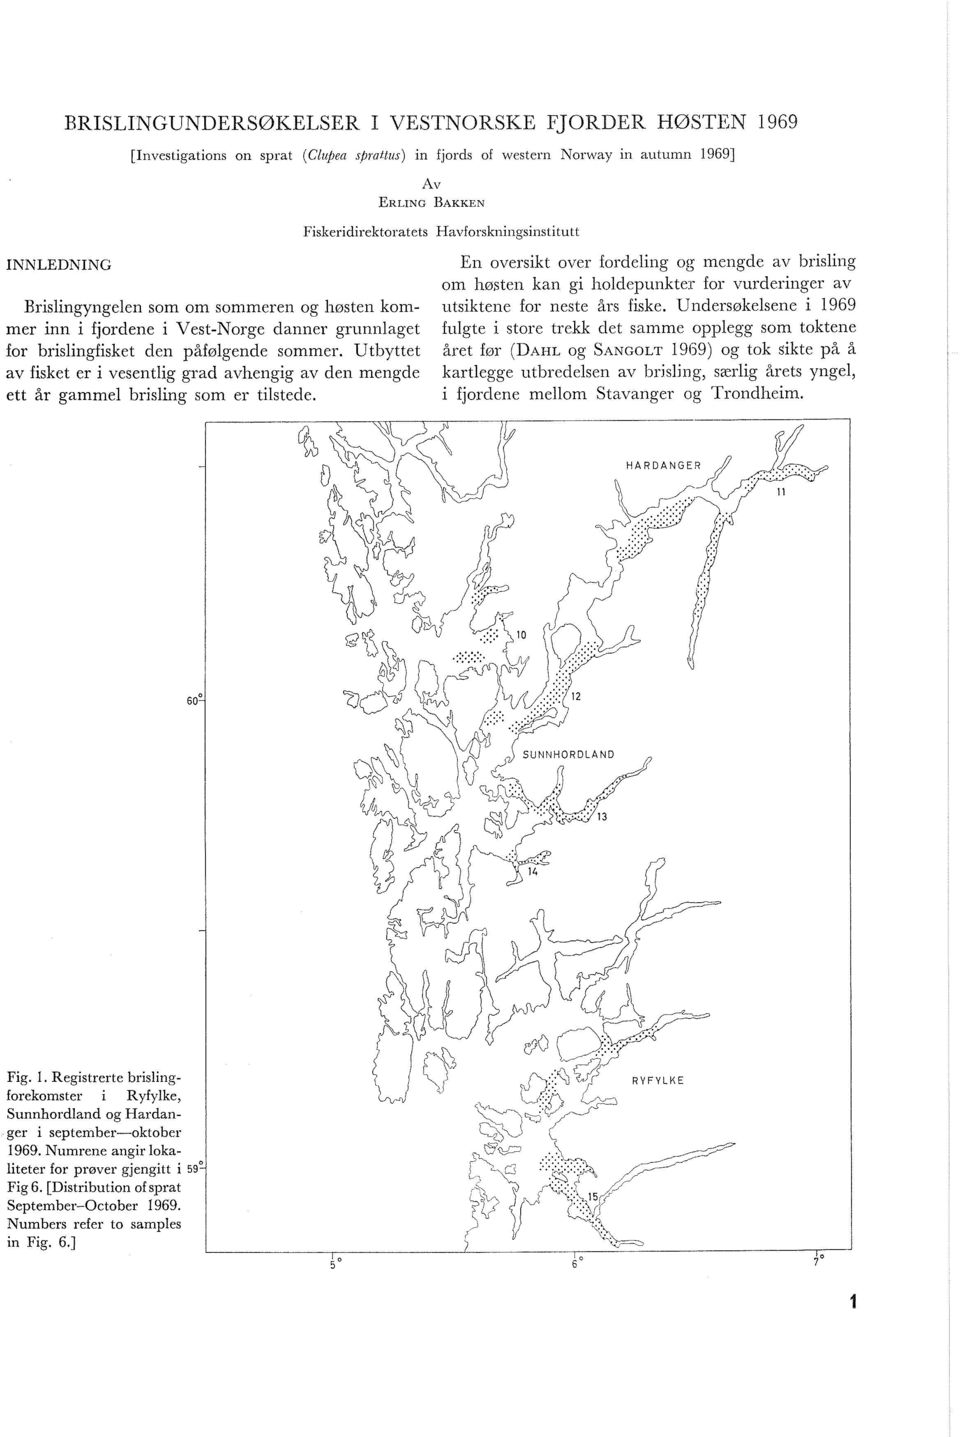 Undersøkelsene i 1969 mer inn i fjordene i Vest-Norge danner grunnlaget fulgte i store trekk det samme opplegg som toktene for brislingfisket den påfølgende sommer.